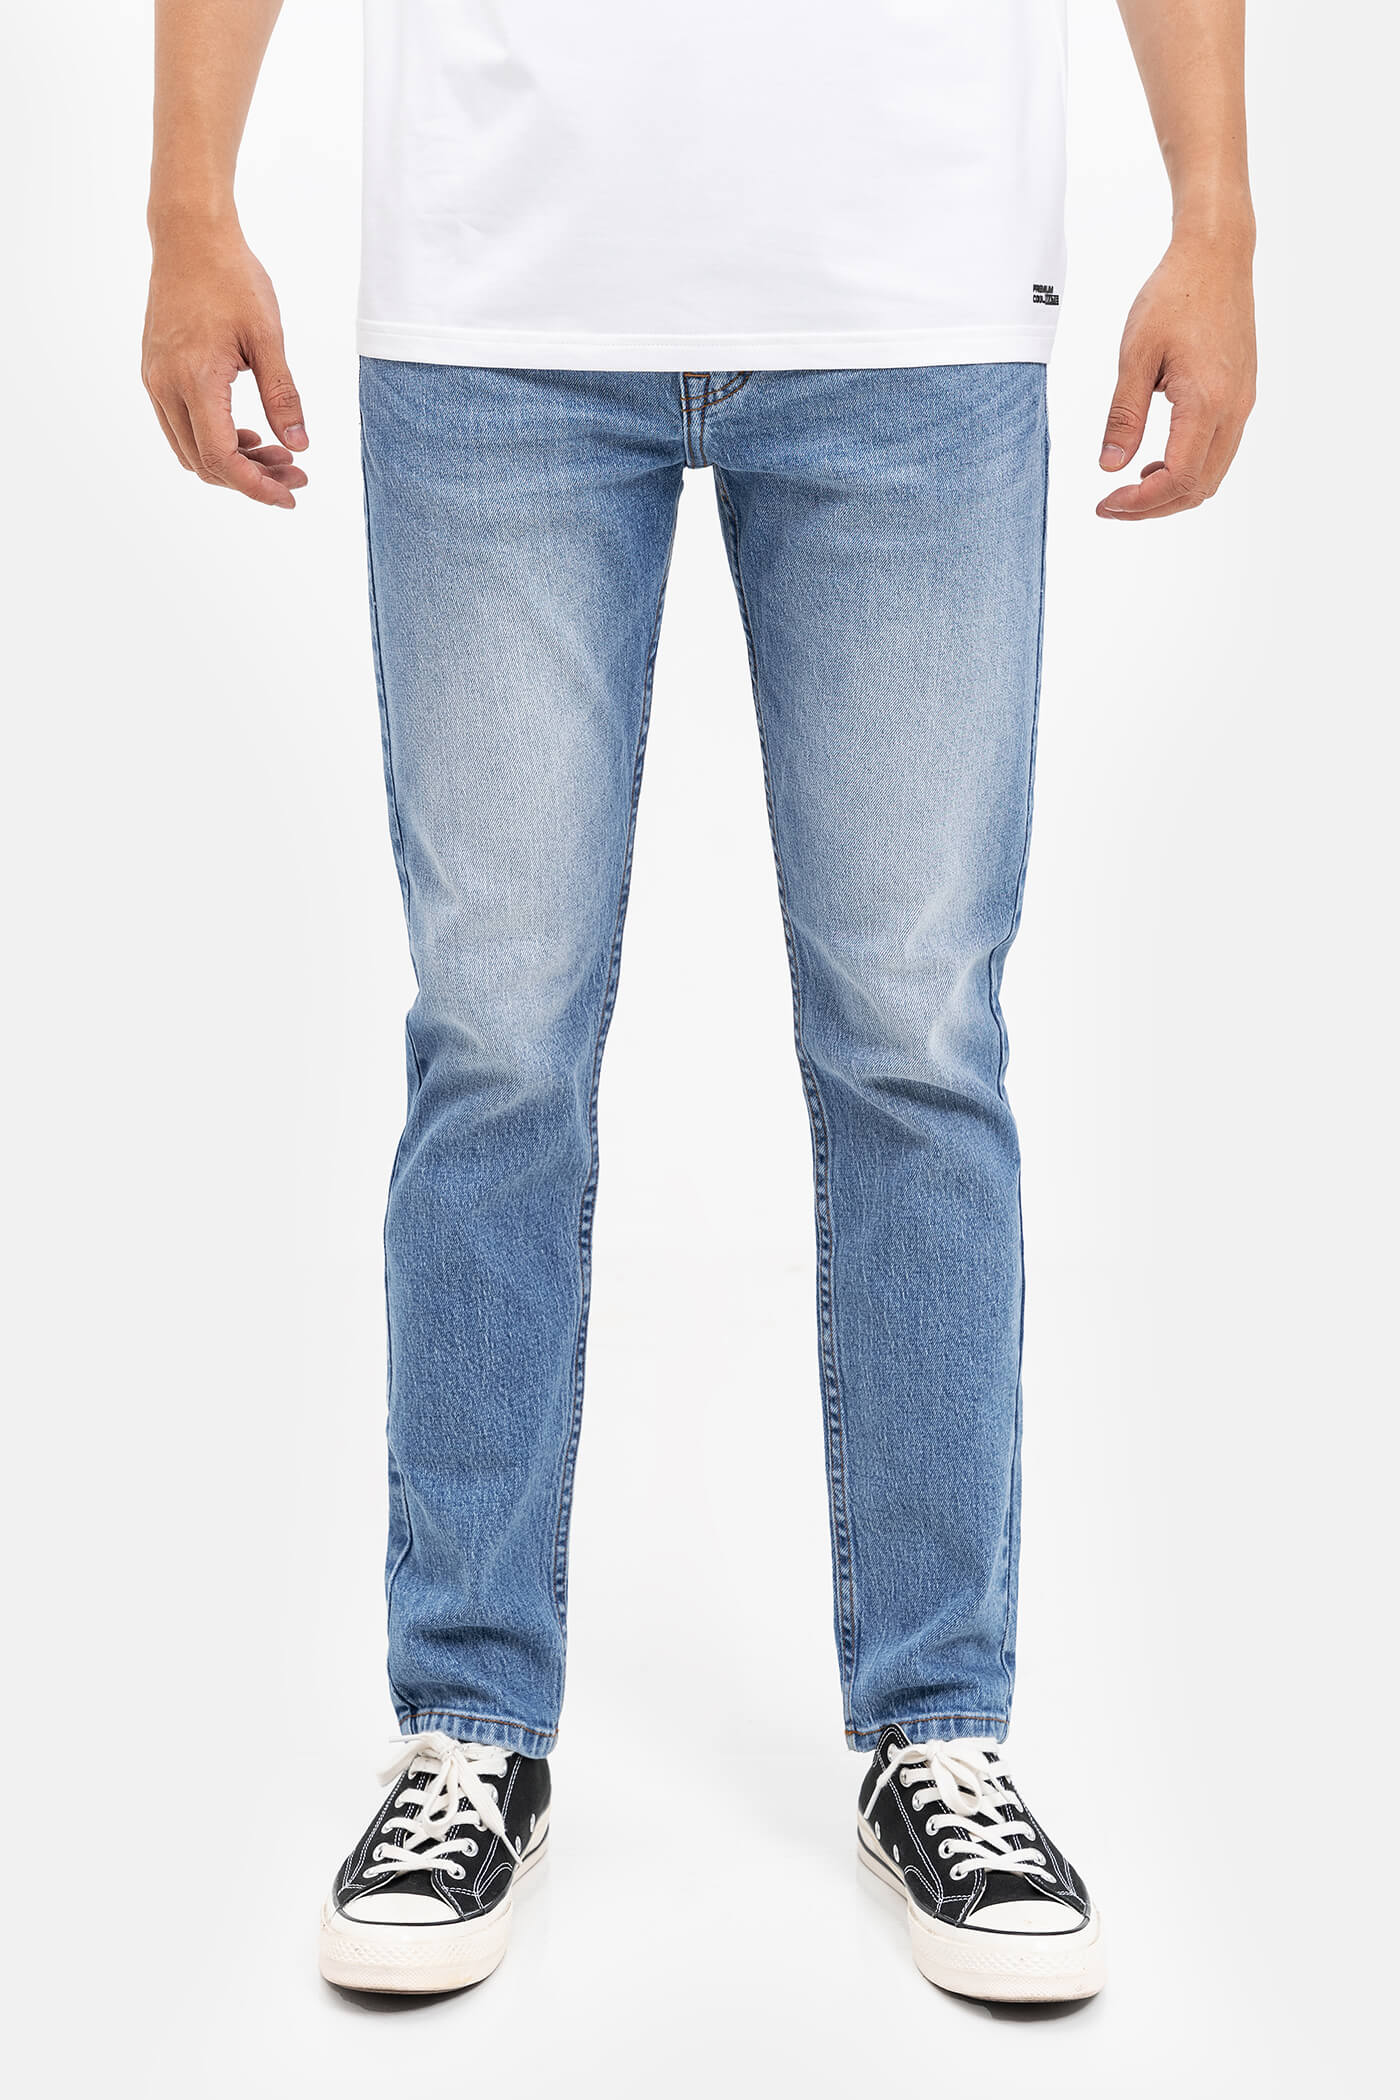 LDP - Quần Jeans Clean Denim dáng Slimfit  S3 Xanh nhạt 2